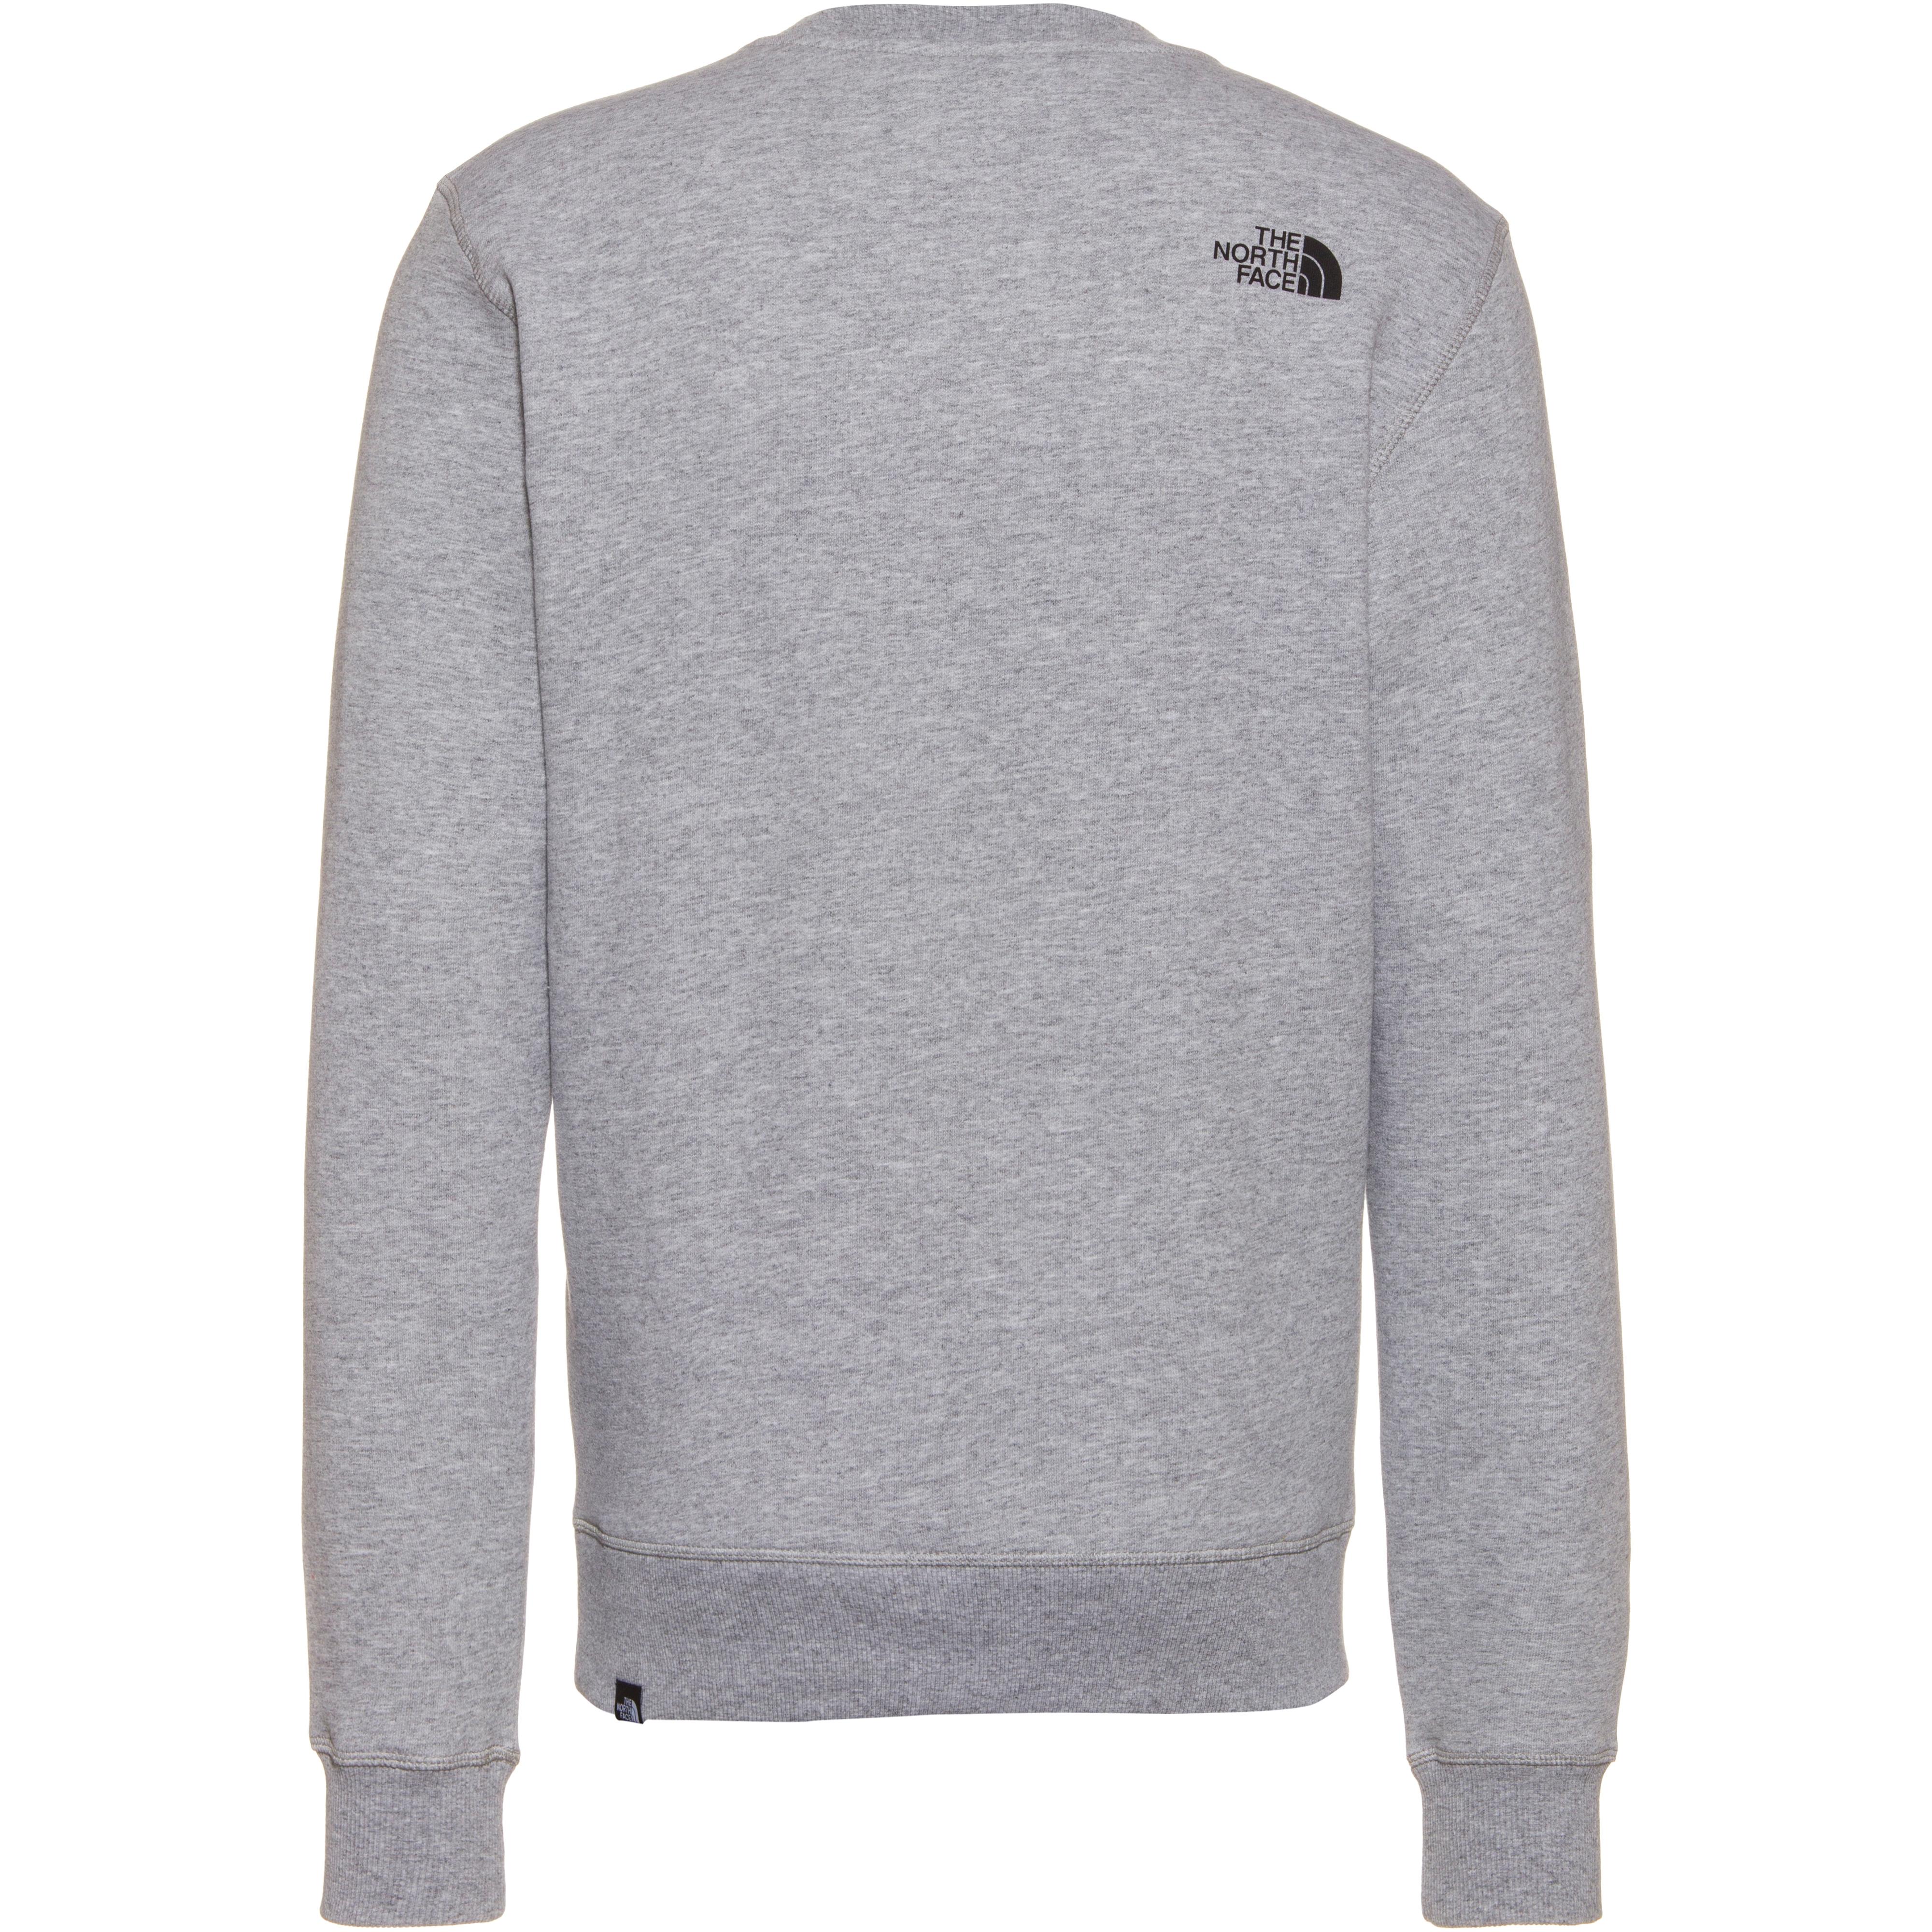 The Face Simple Dome Sweatshirt Herren light grey heather im Online Shop von SportScheck kaufen